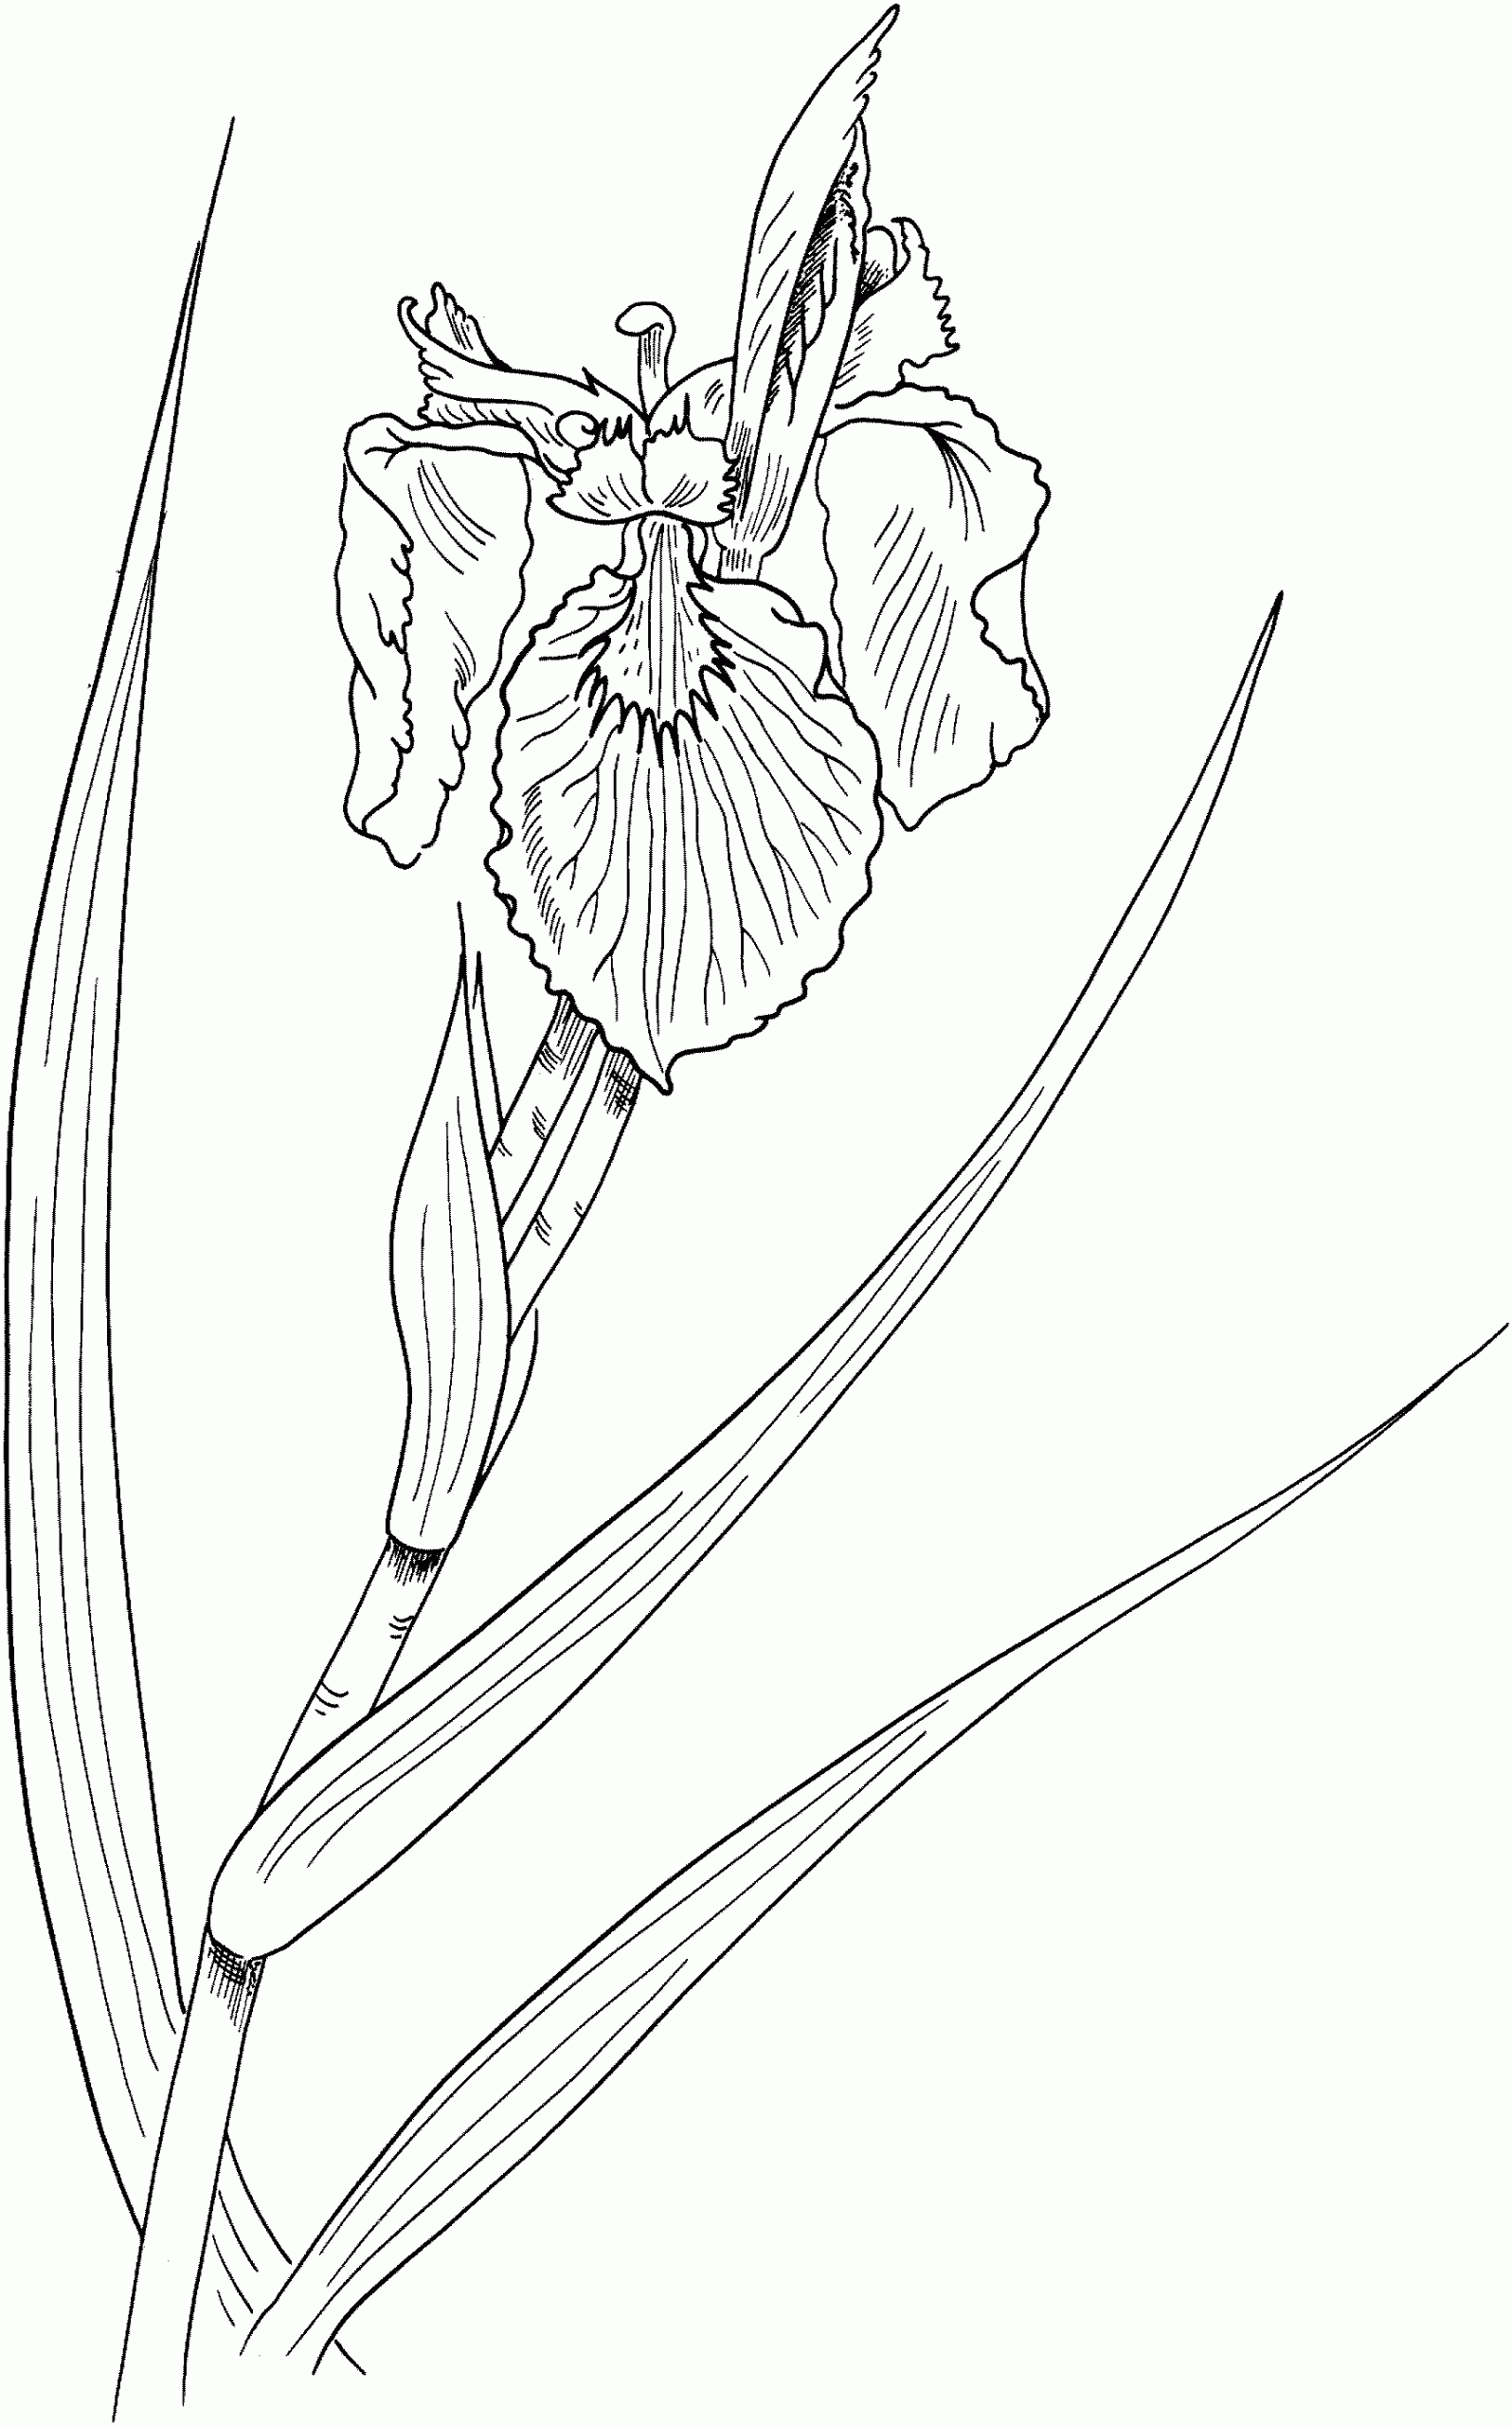 Iris Pseudacorus or Yellow Flag Iris